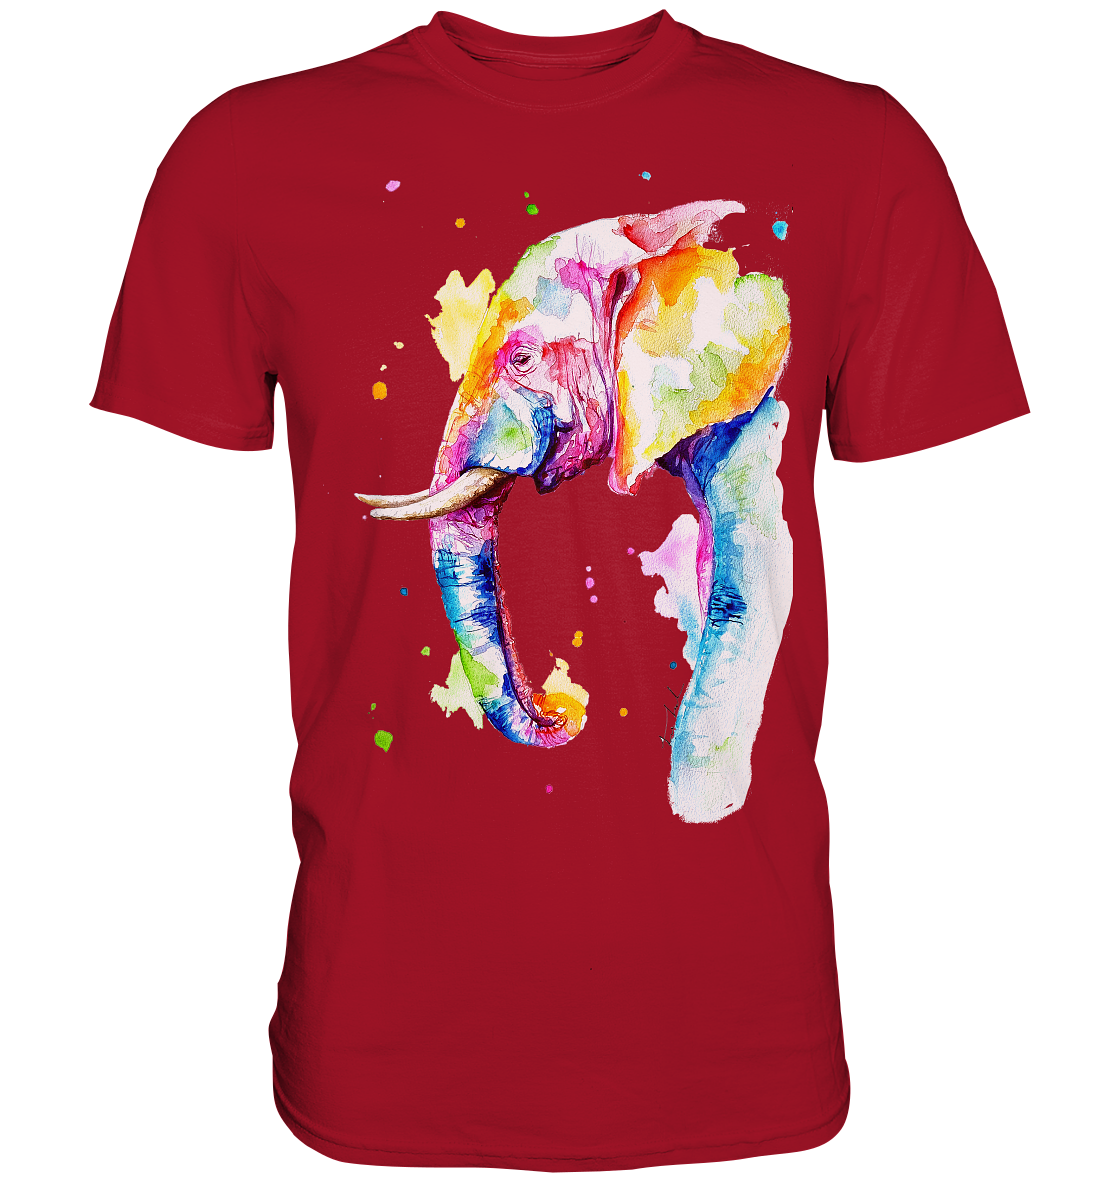 Bunter Elefant - Classic Shirt